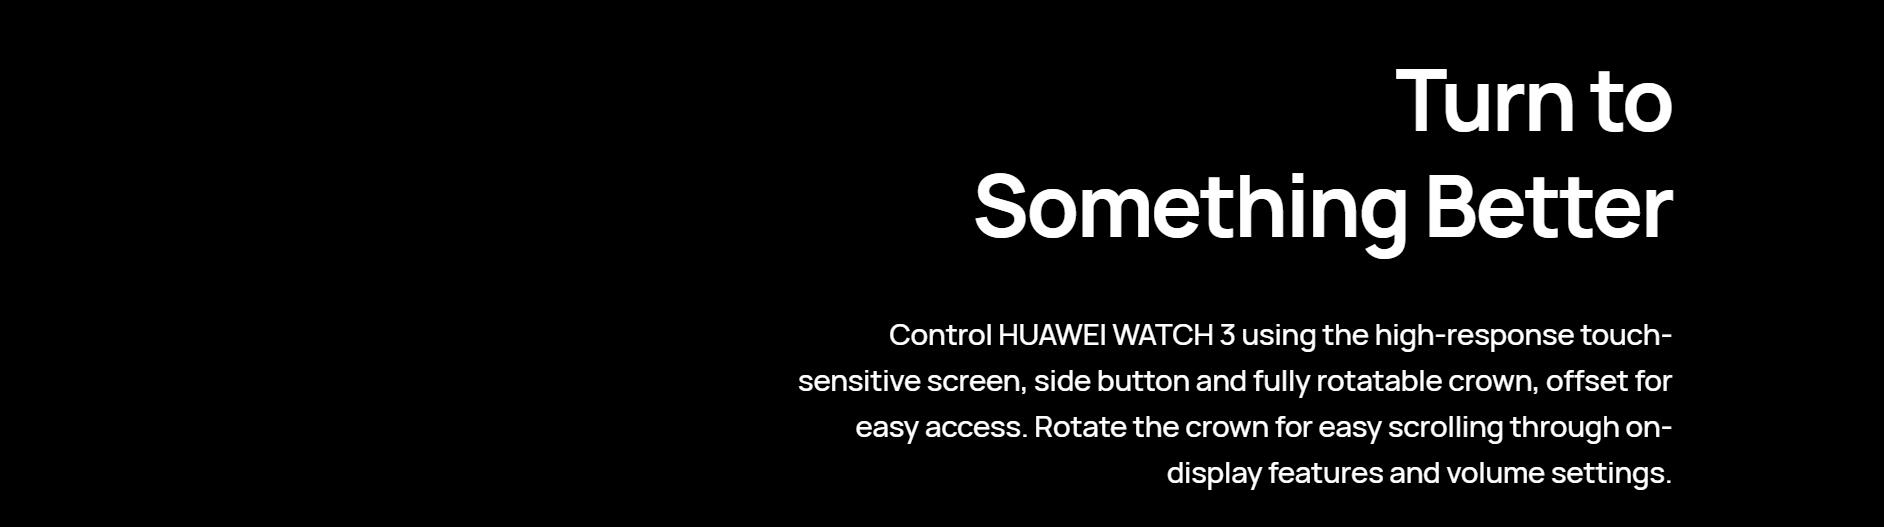 Huawei-Watch-3-05.jpg